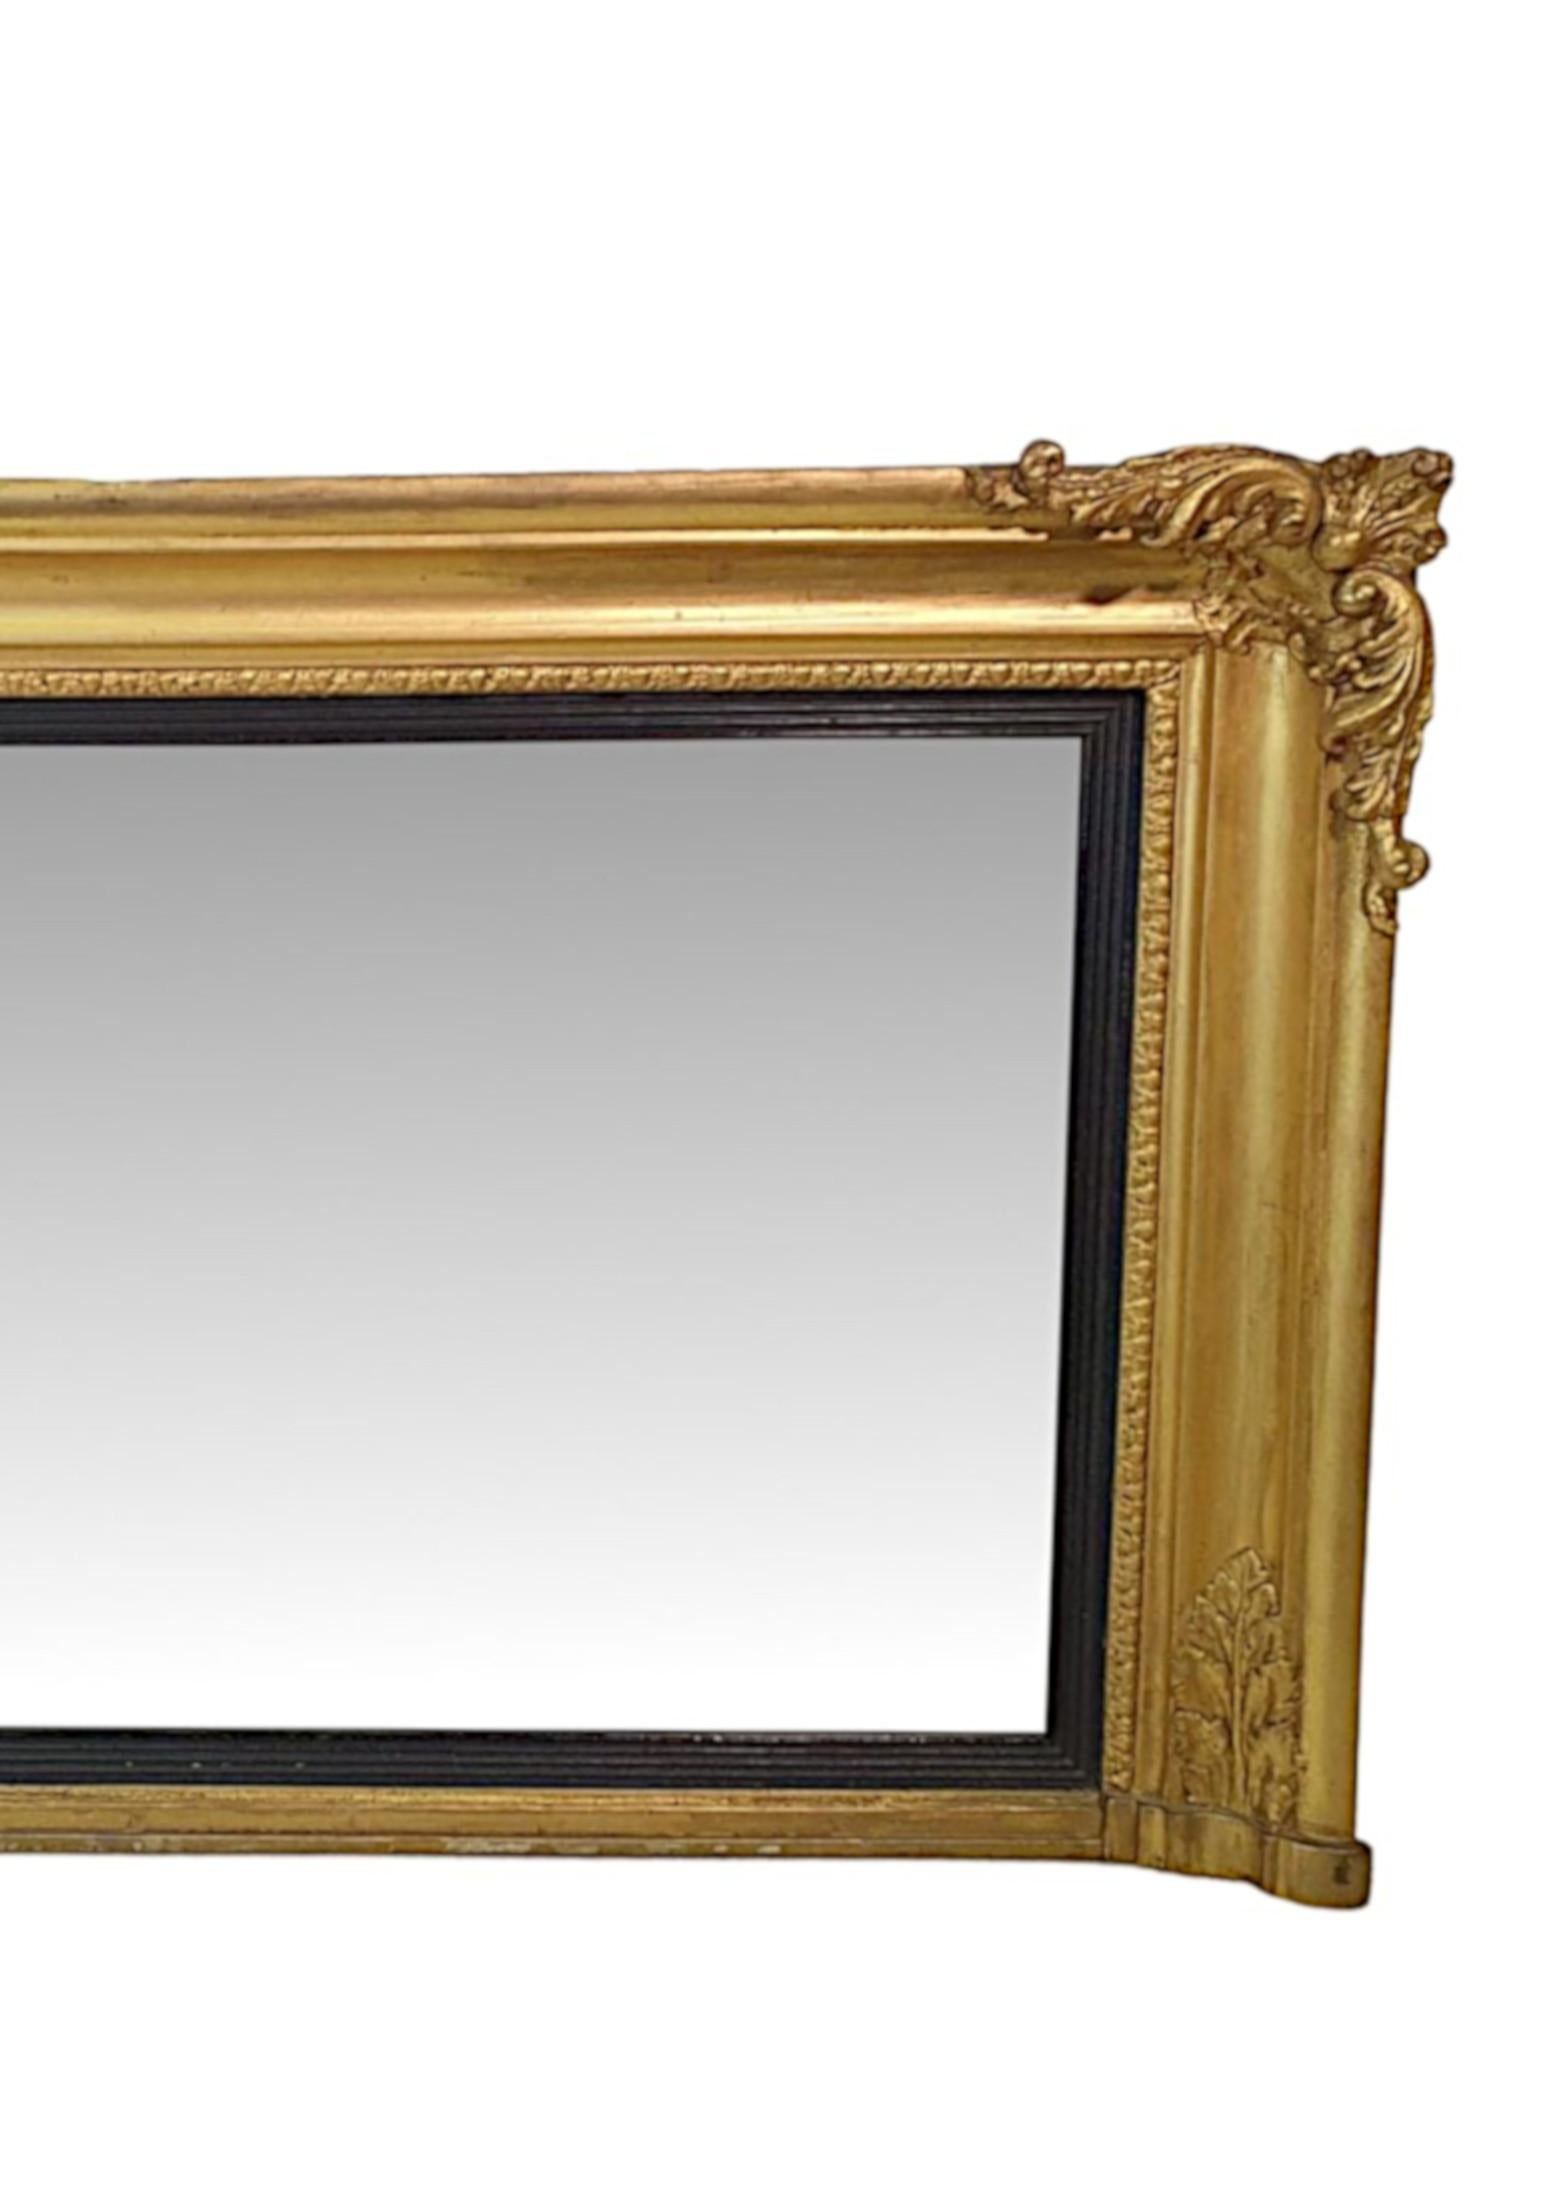 Regency-Spiegel aus vergoldetem Holz des frühen 19. Jahrhunderts mit rechteckiger Form und gepflegten Proportionen. Die Spiegelplatte ist in einem Rahmen aus vergoldetem Holz mit Akanthus- und Ei-und-Pfeil-Motiven eingefasst und wird von fein